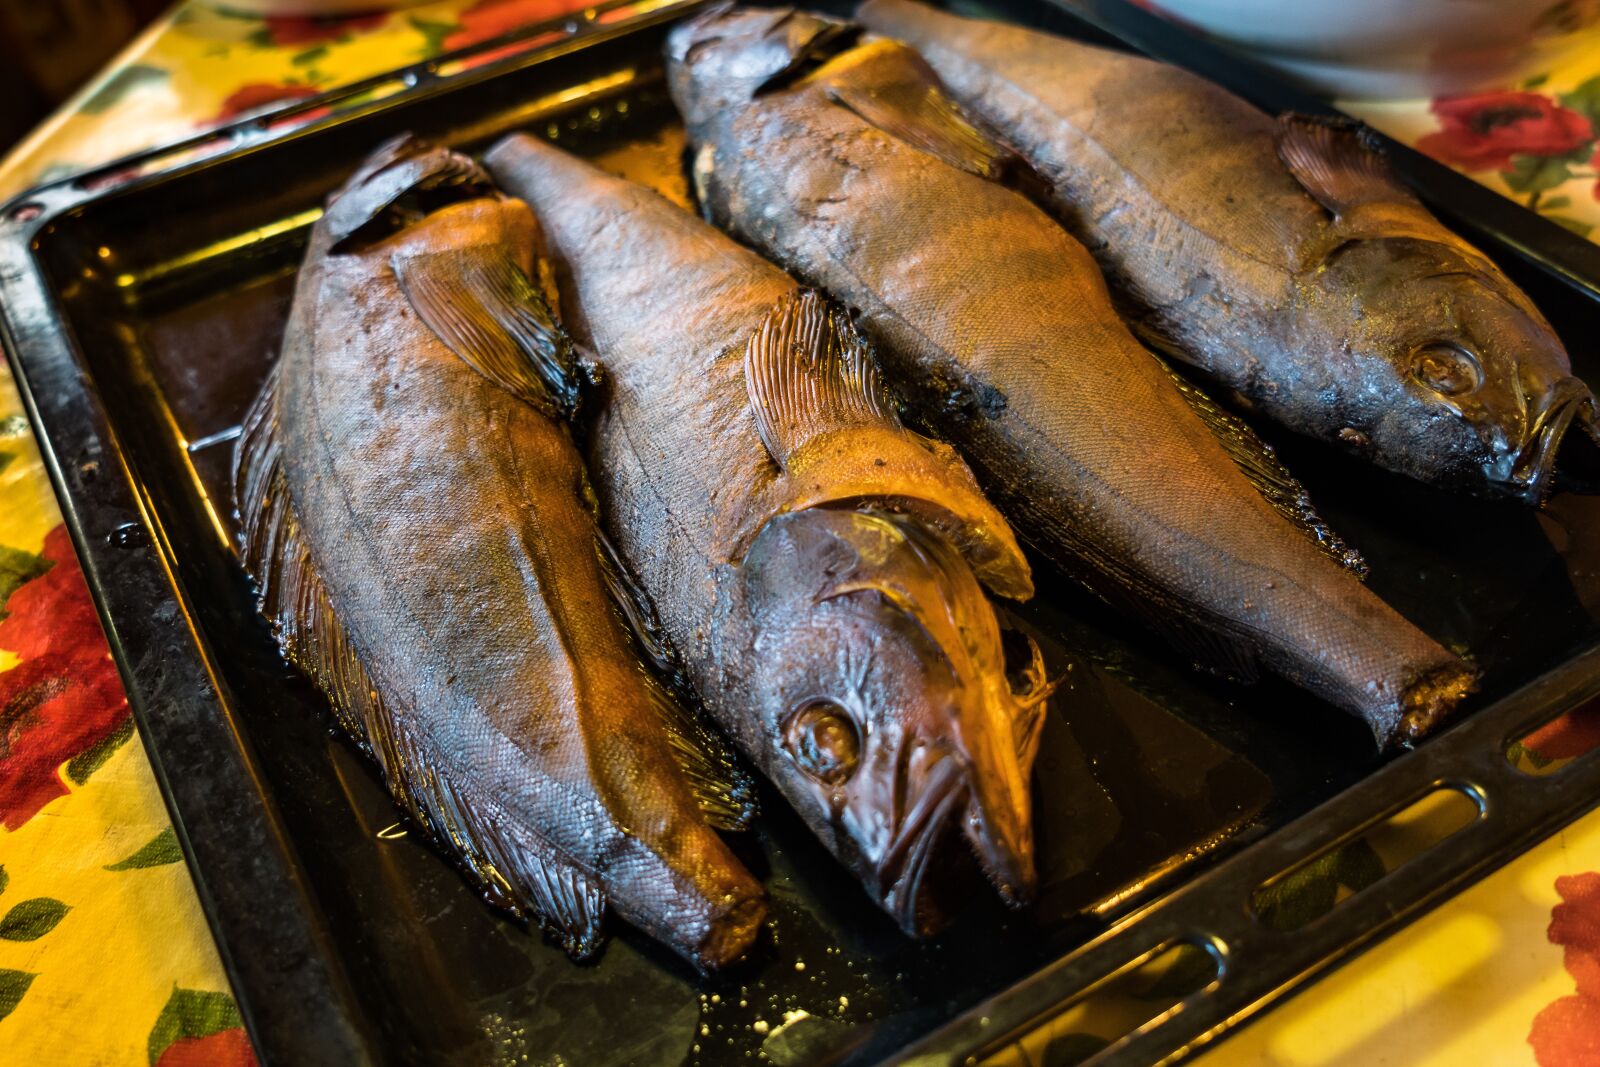 Sony Vario Tessar T* FE 24-70mm F4 ZA OSS sample photo. Smoked fish, lingcod, food photography